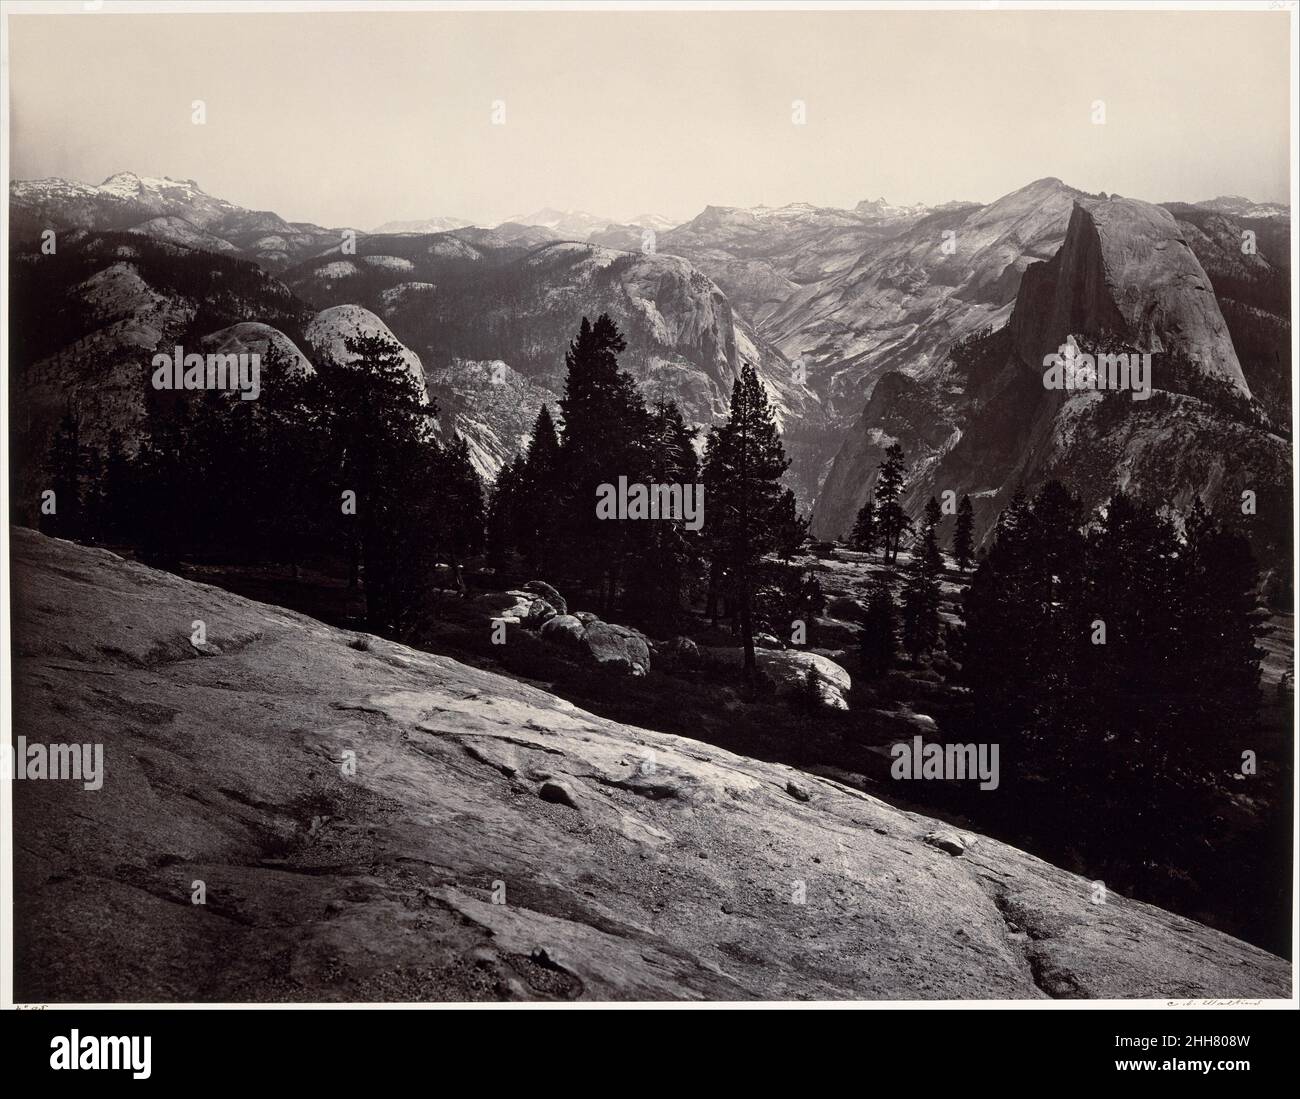 Vista dal Sentinel Dome, Yosemite 1865–66 Carleton E. Watkins American Carleton Watkins ha fatto il suo nome con vedute della Yosemite Valley, che ha fotografato ripetutamente per un periodo di vent'anni, a partire dal 1861. A quel tempo era un virtuoso praticante del difficile processo di wet-collodion utilizzando lastre di vetro 'mammoth', che rendevano la vastità del paesaggio e i suoi infiniti dettagli con portata e chiarezza insuperabili. Durante una visita a Yosemite nel 1865-66, Watkins salì al Sentinel Dome. Ha fatto una serie di tre fotografie di questa vista senza pari, ciascuna un integrale, self-s Foto Stock